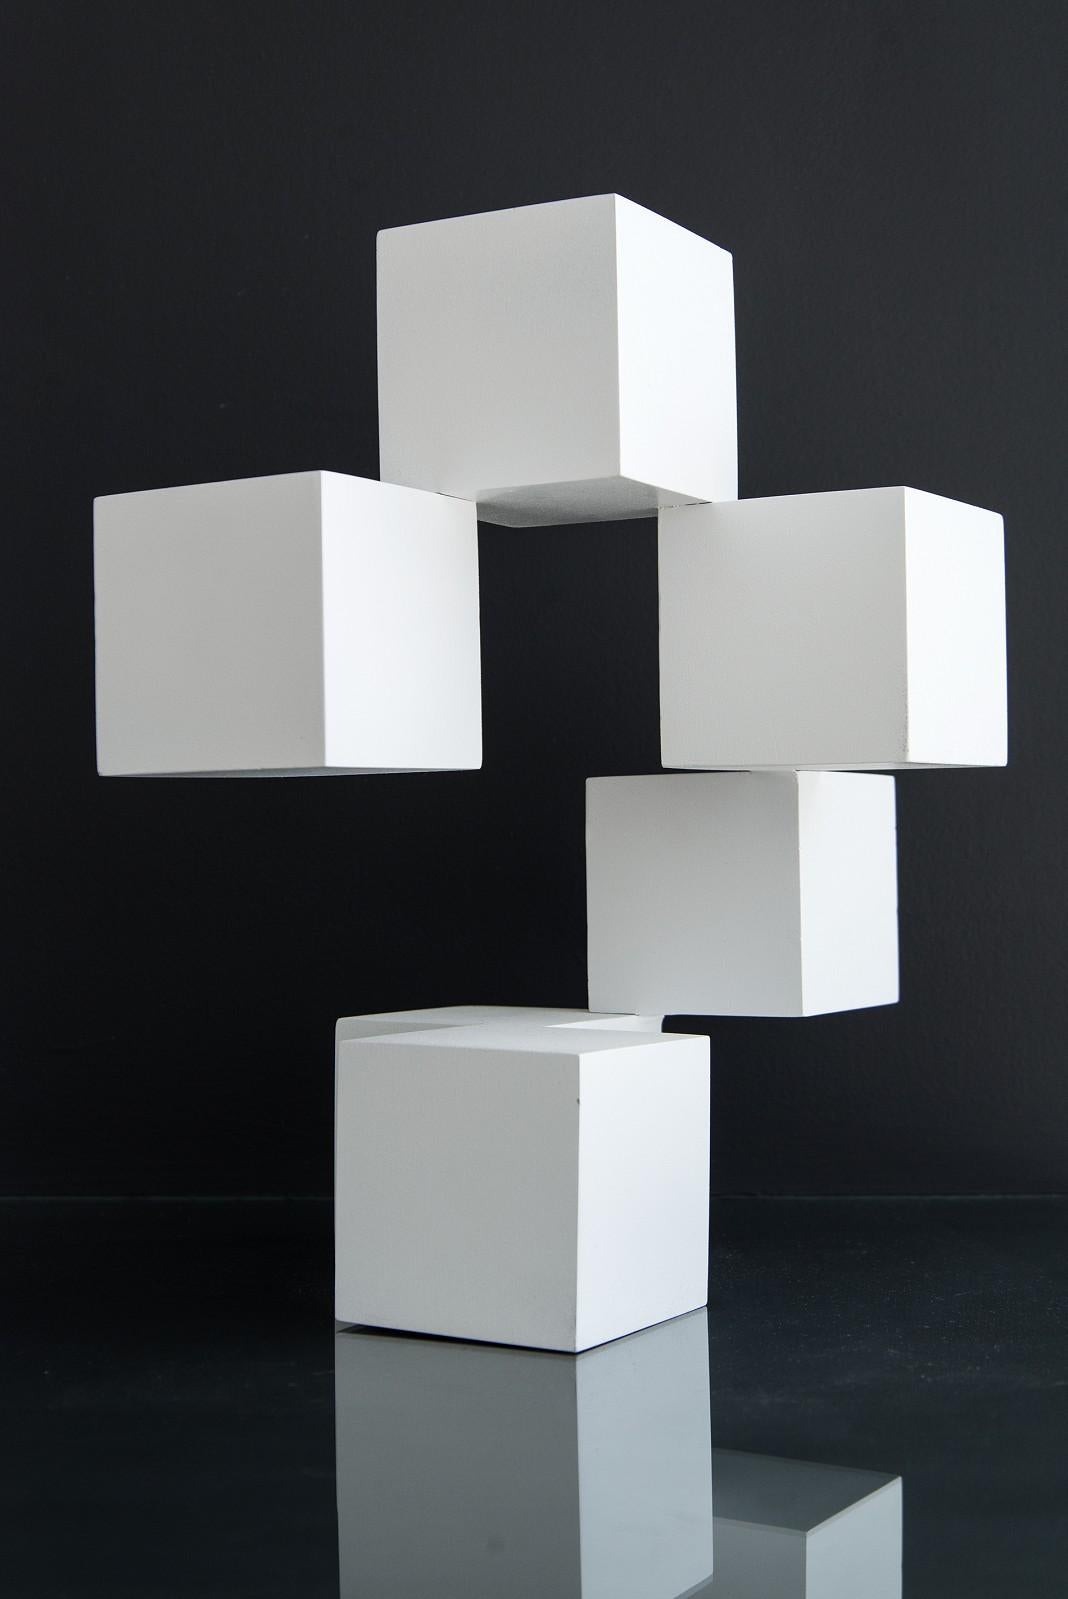 Dans cette intrigante nouvelle sculpture contemporaine du Québécois Phillips Pallafray, six cubes d'un blanc éclatant apparaissent comme suspendus dans l'espace. Chaque cube est attaché à un seul coin, soulignant la nature délicate et fragile de